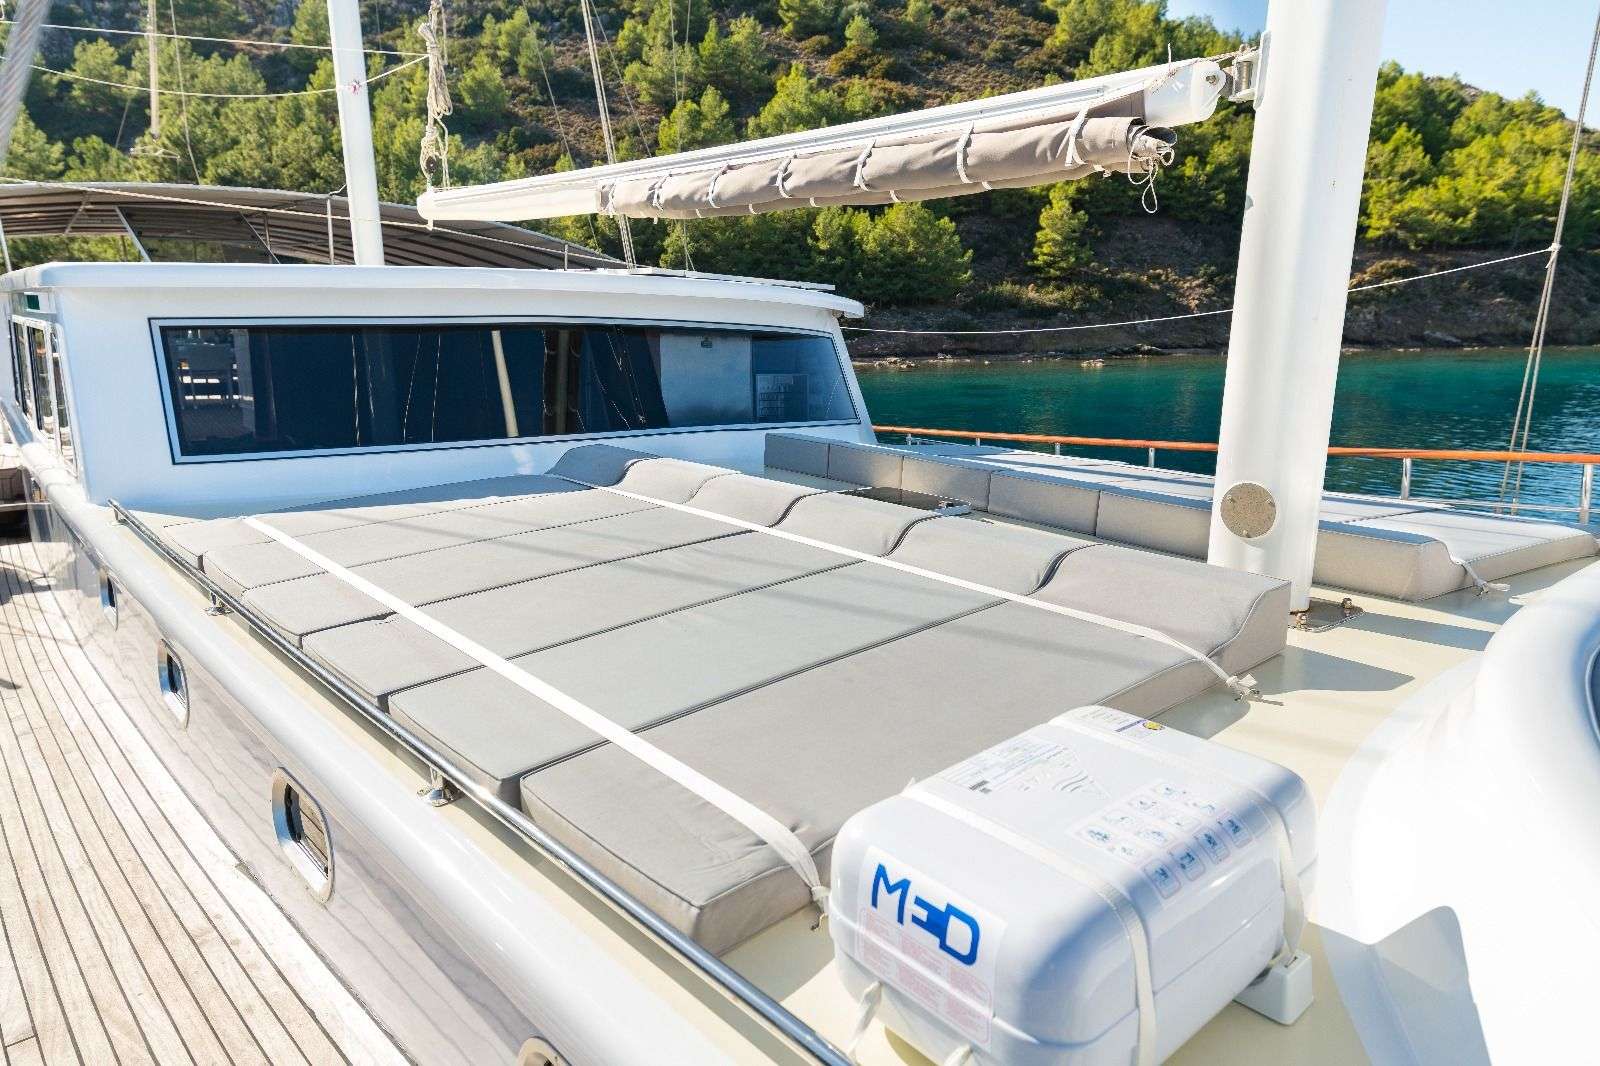 koray ege - Yacht Charter Palaio Faliro & Boat hire in Greece & Turkey 3